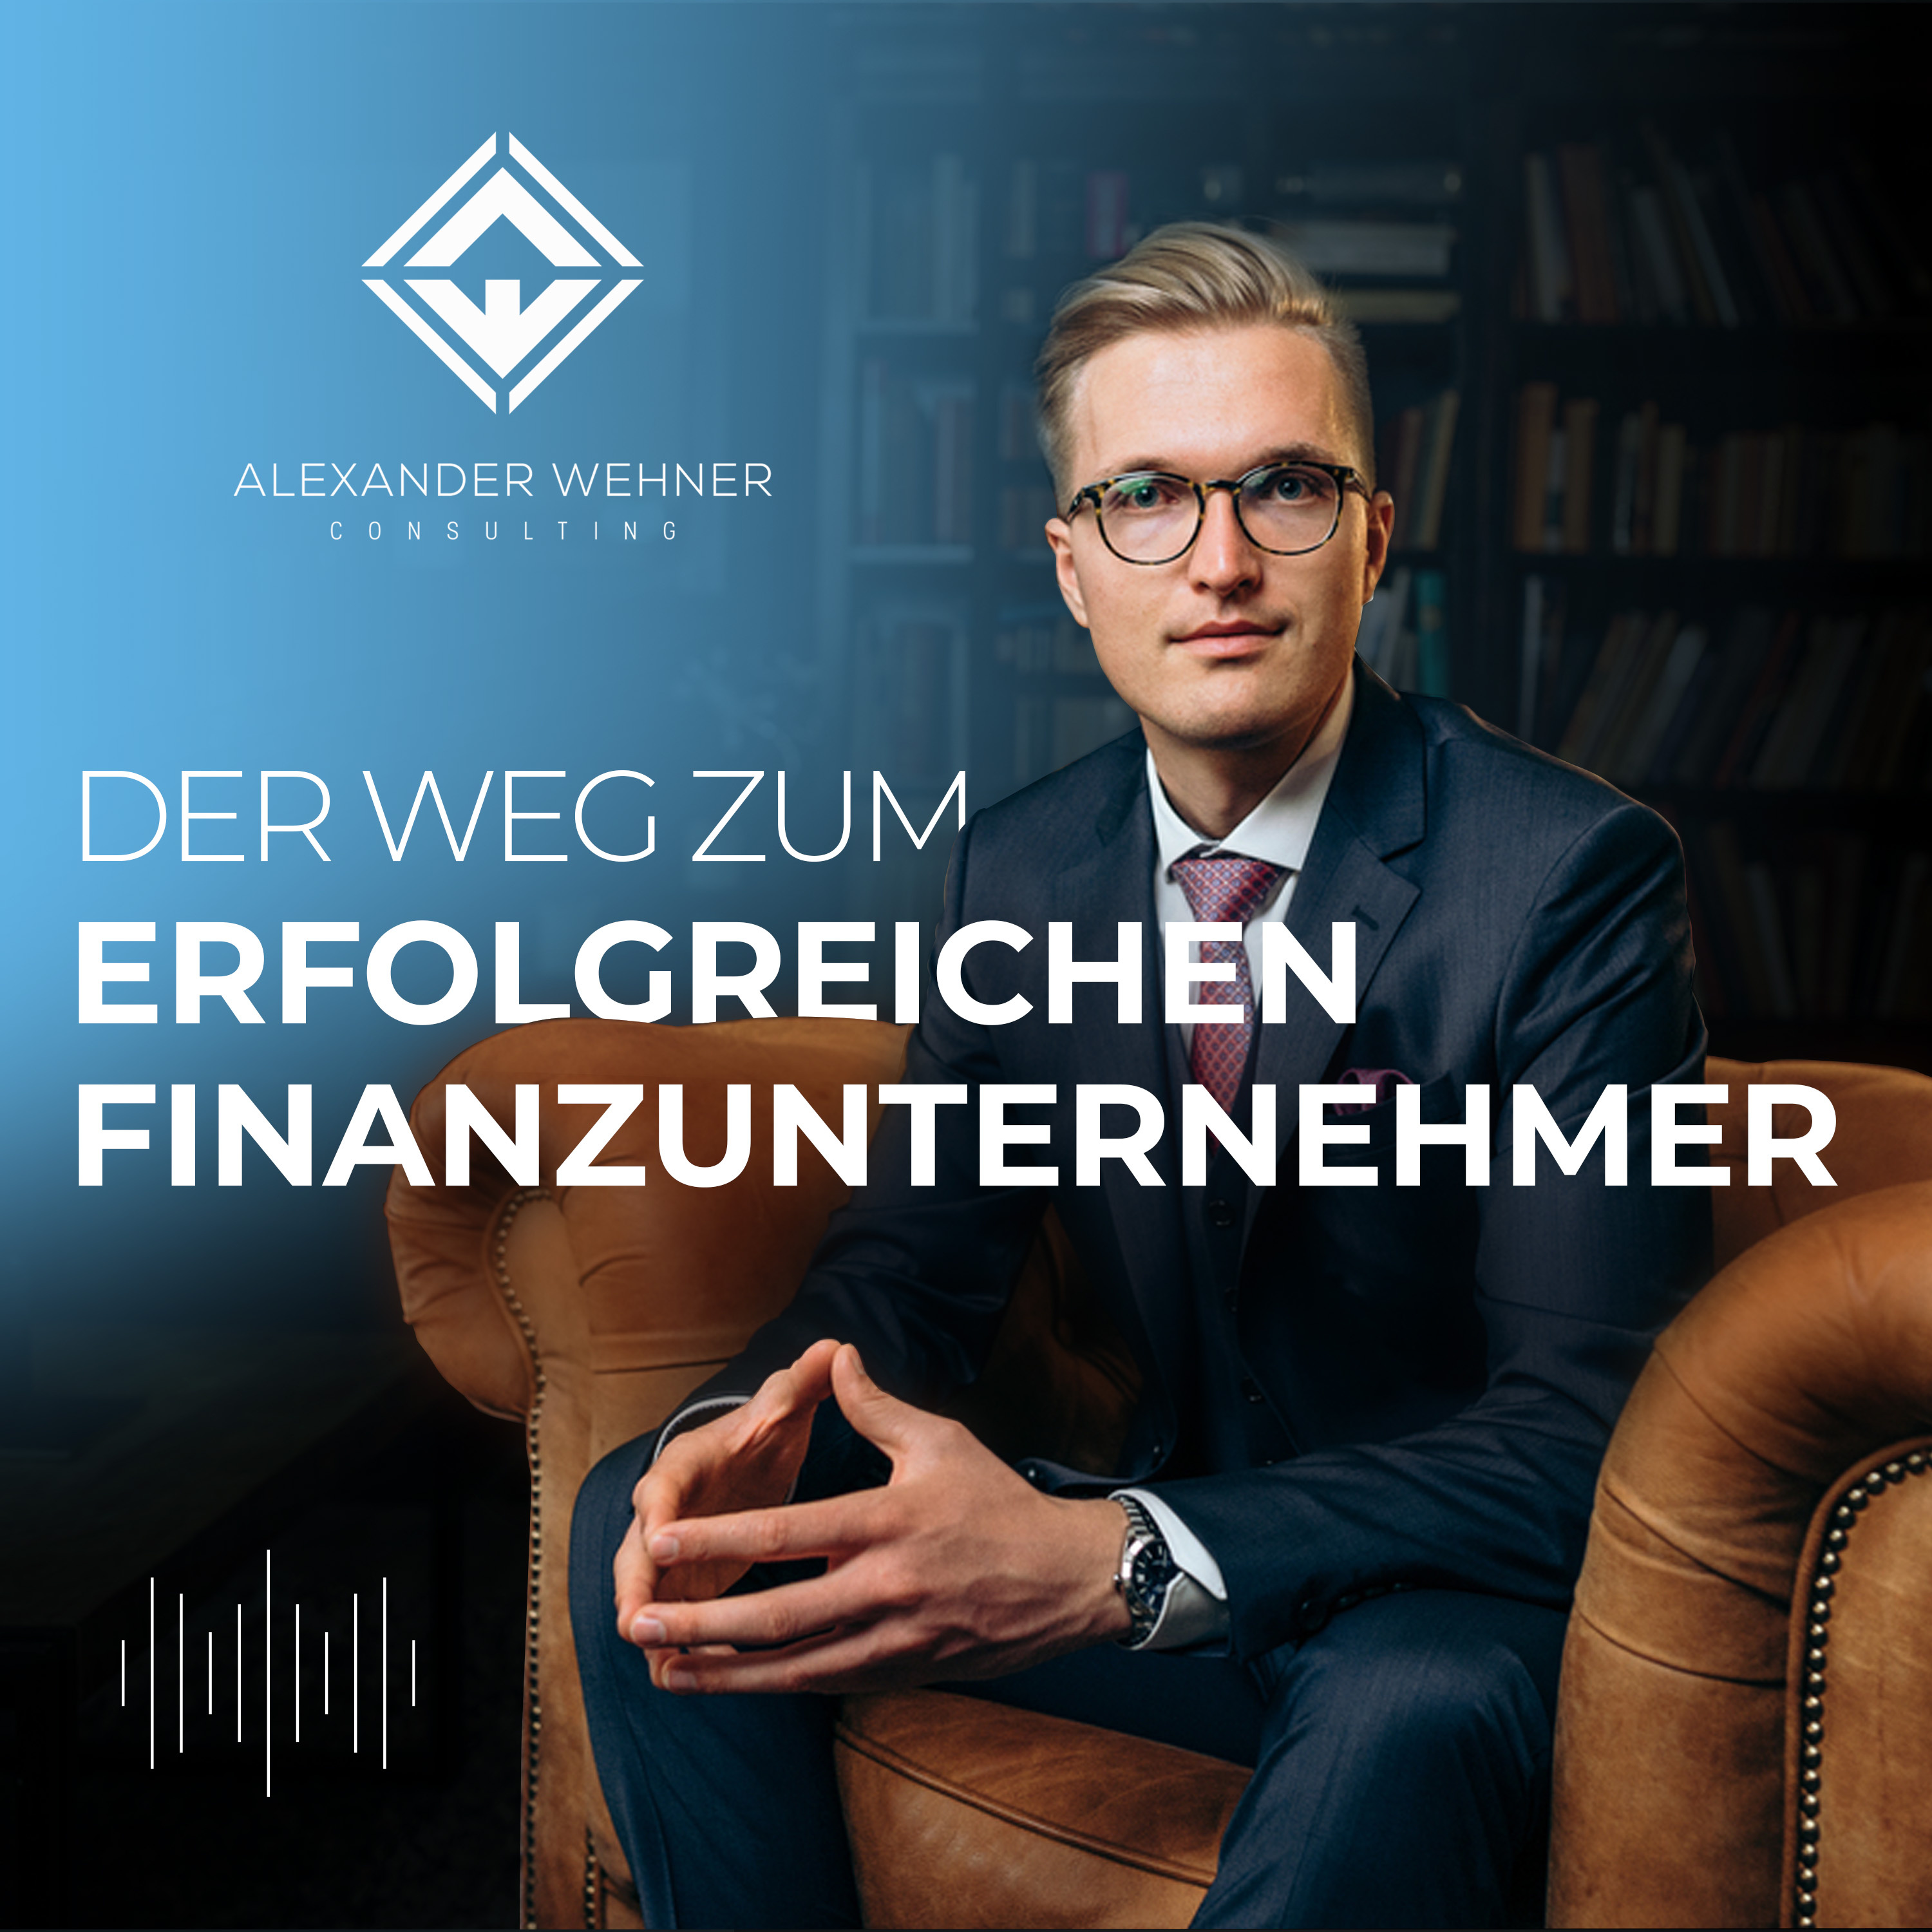 Der Weg zum erfolgreichen Finanzunternehmer mit Alexander Wehner